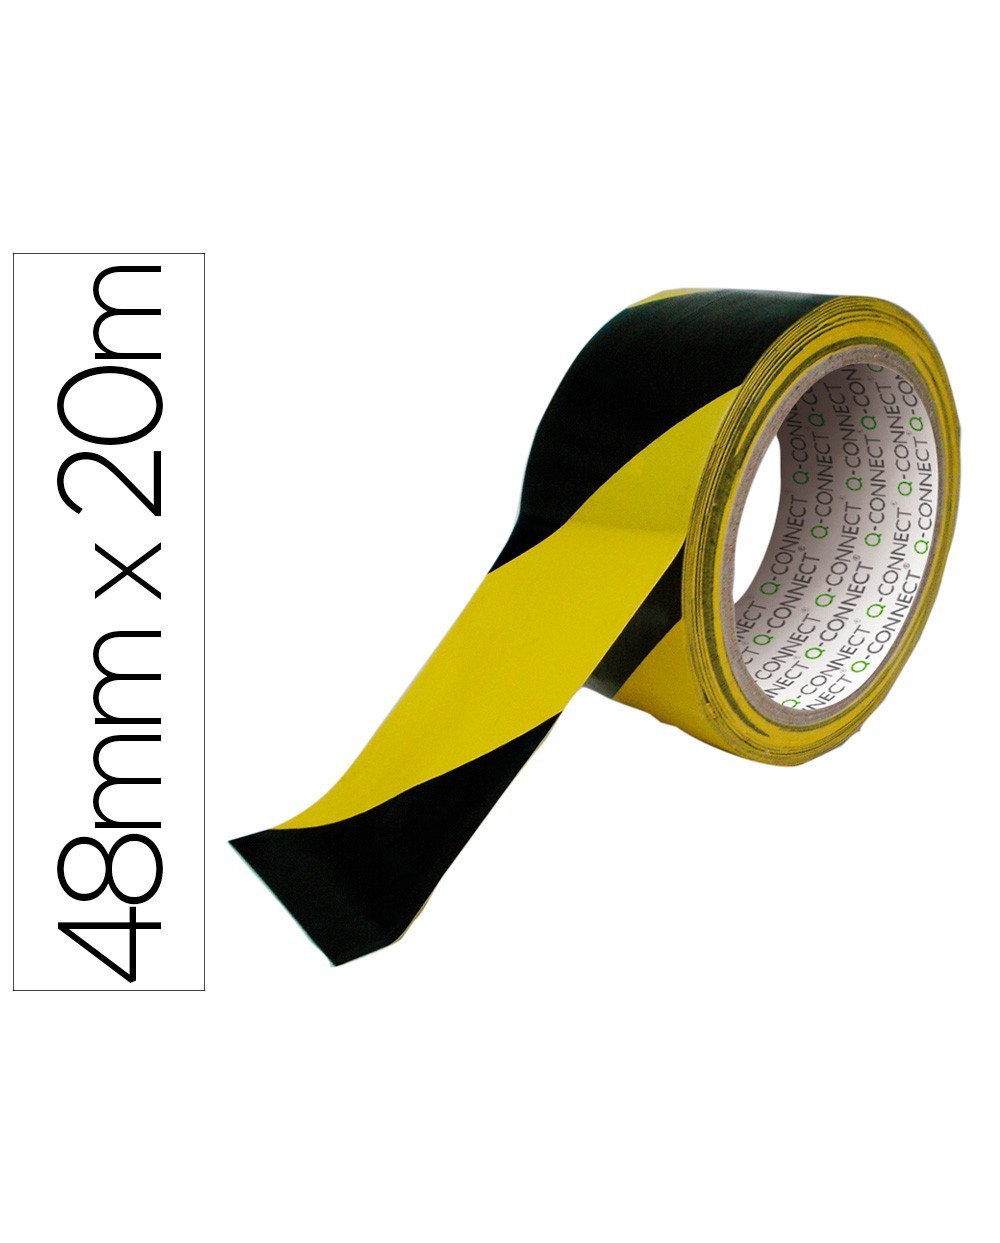 Cinta adhesiva q connect de seguridad amarilla y negra 20 mt x 48 mm